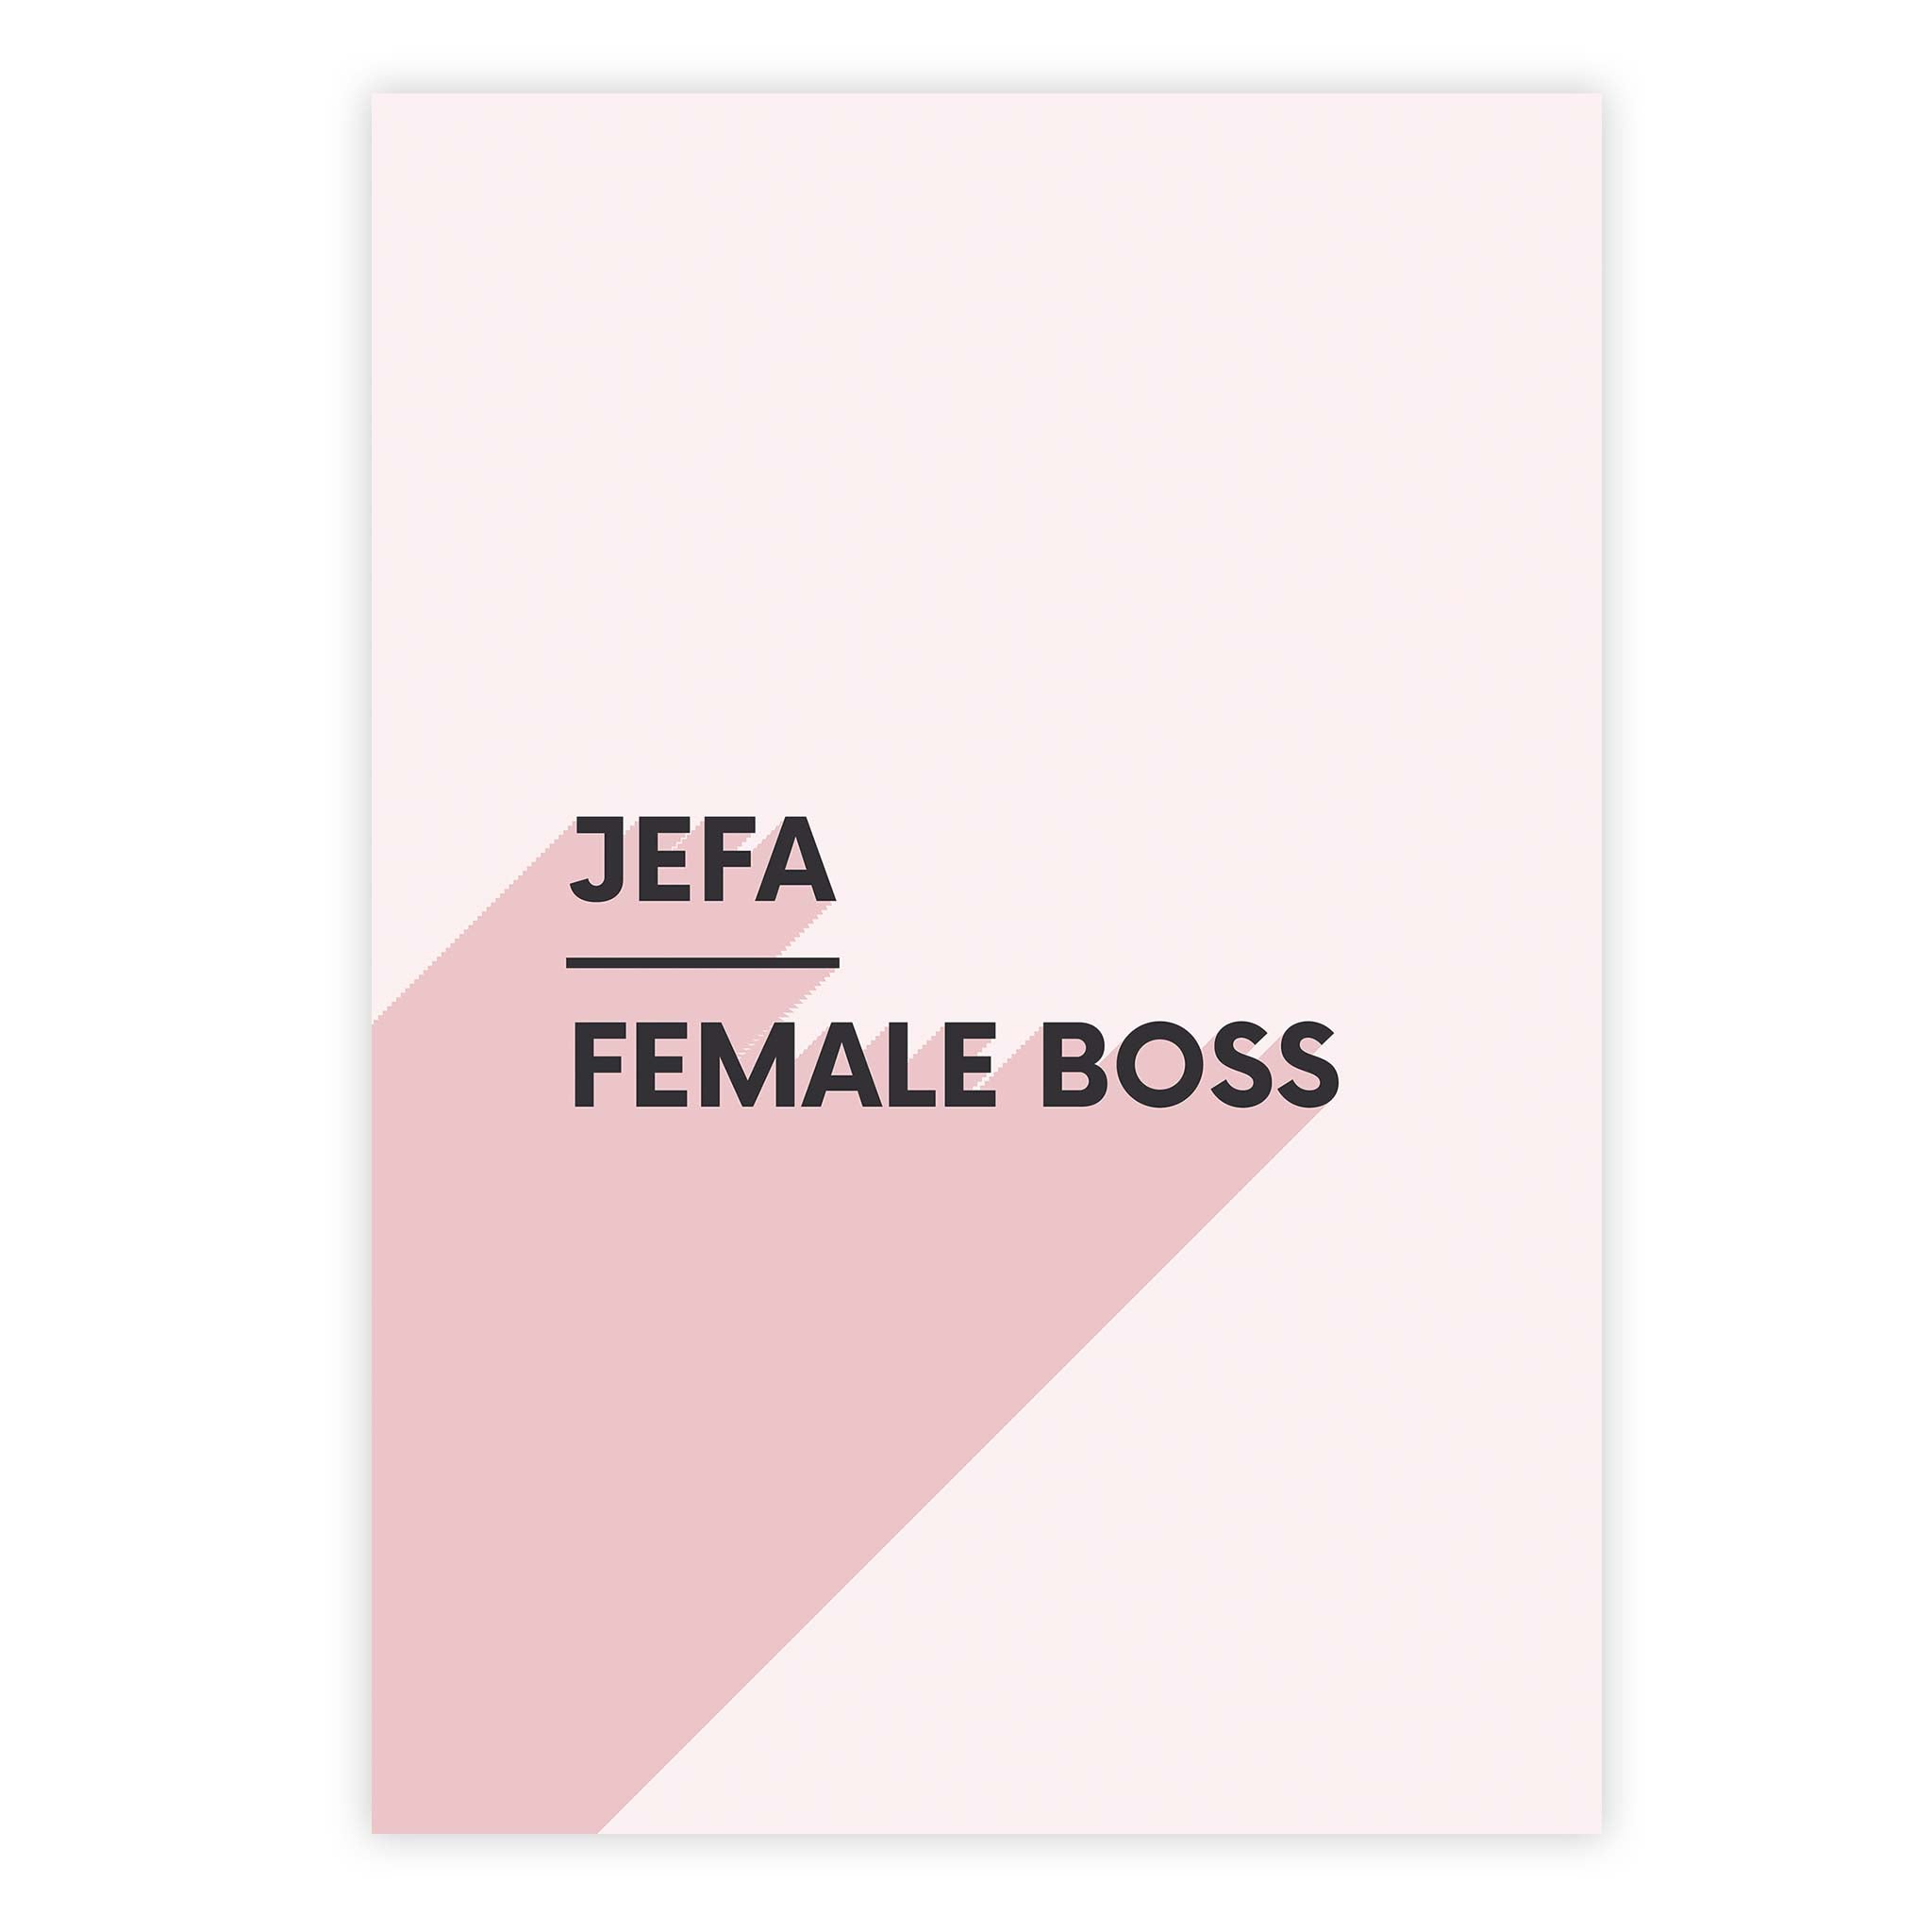 Jefa - female boss